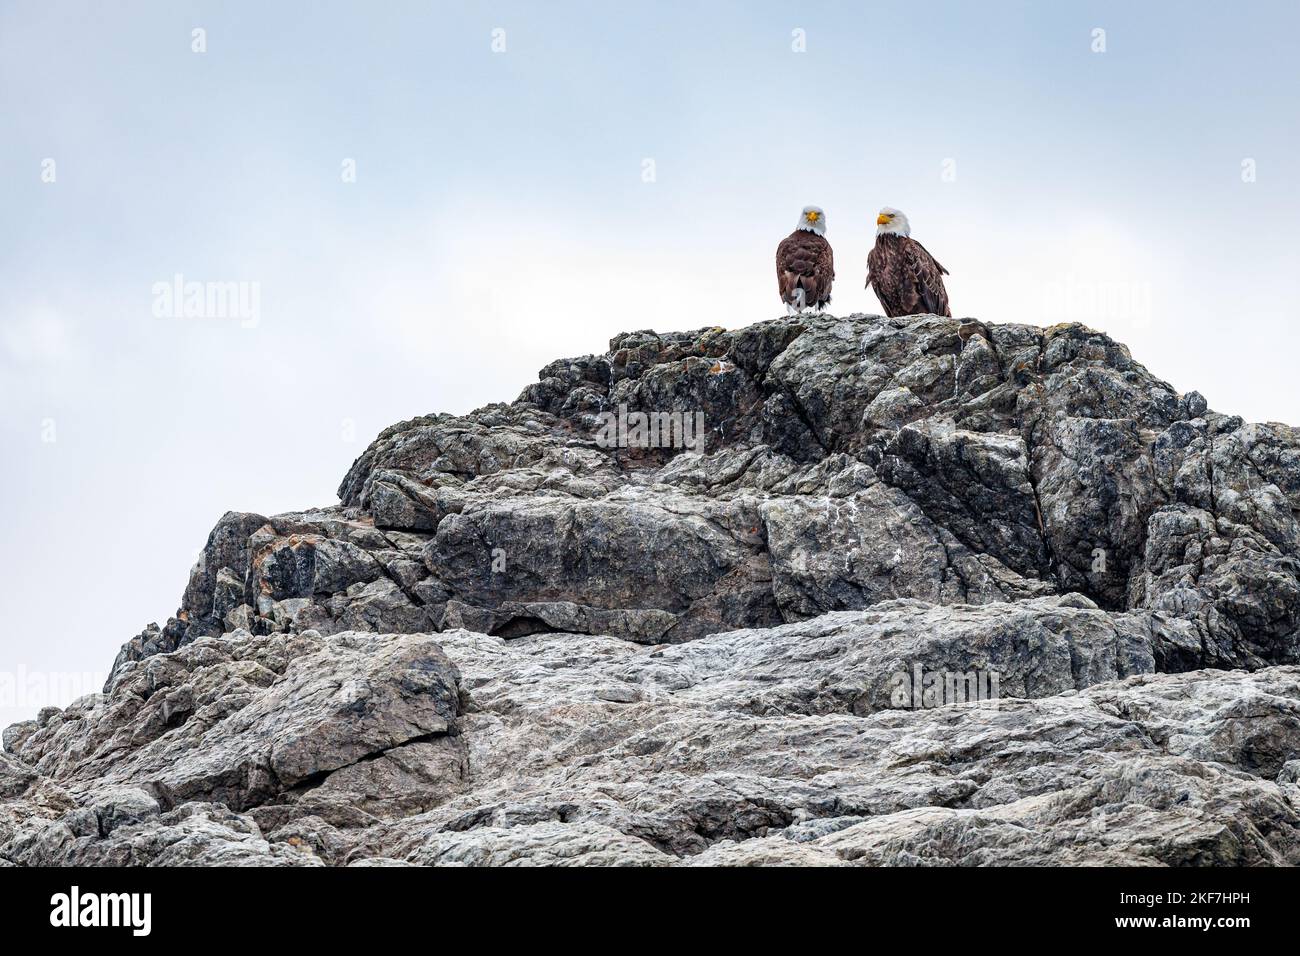 Zwei kühne Adler, die auf einem Felsen mit einer Skyscape im Hintergrund stehen Stockfoto